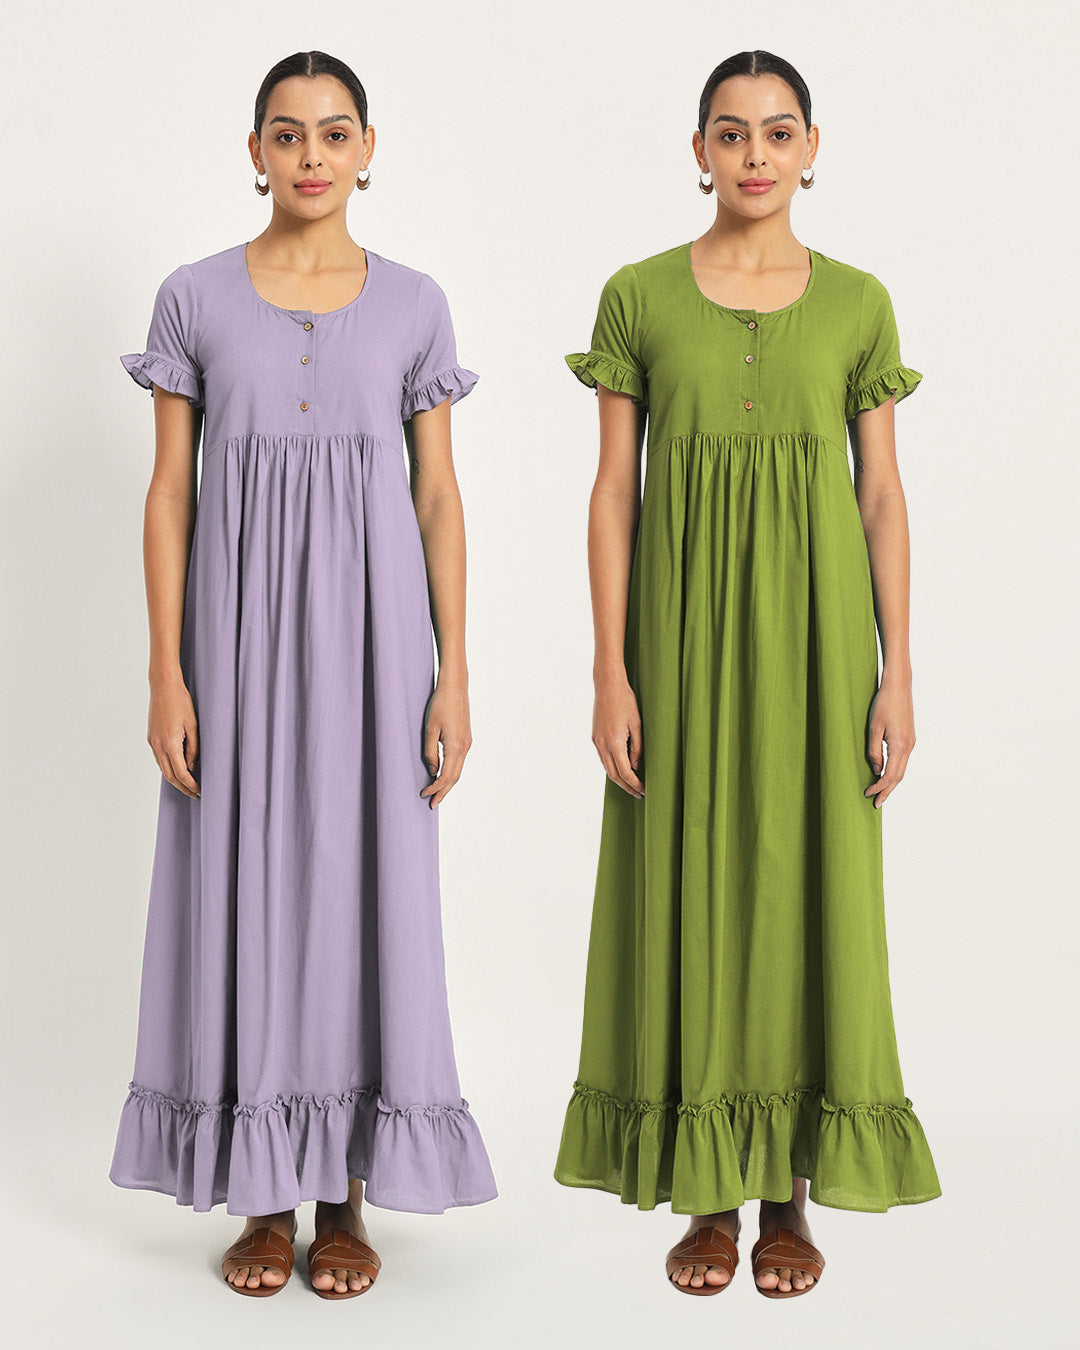 Combo: Lilac & Sage Green Hush Hour Nightdress